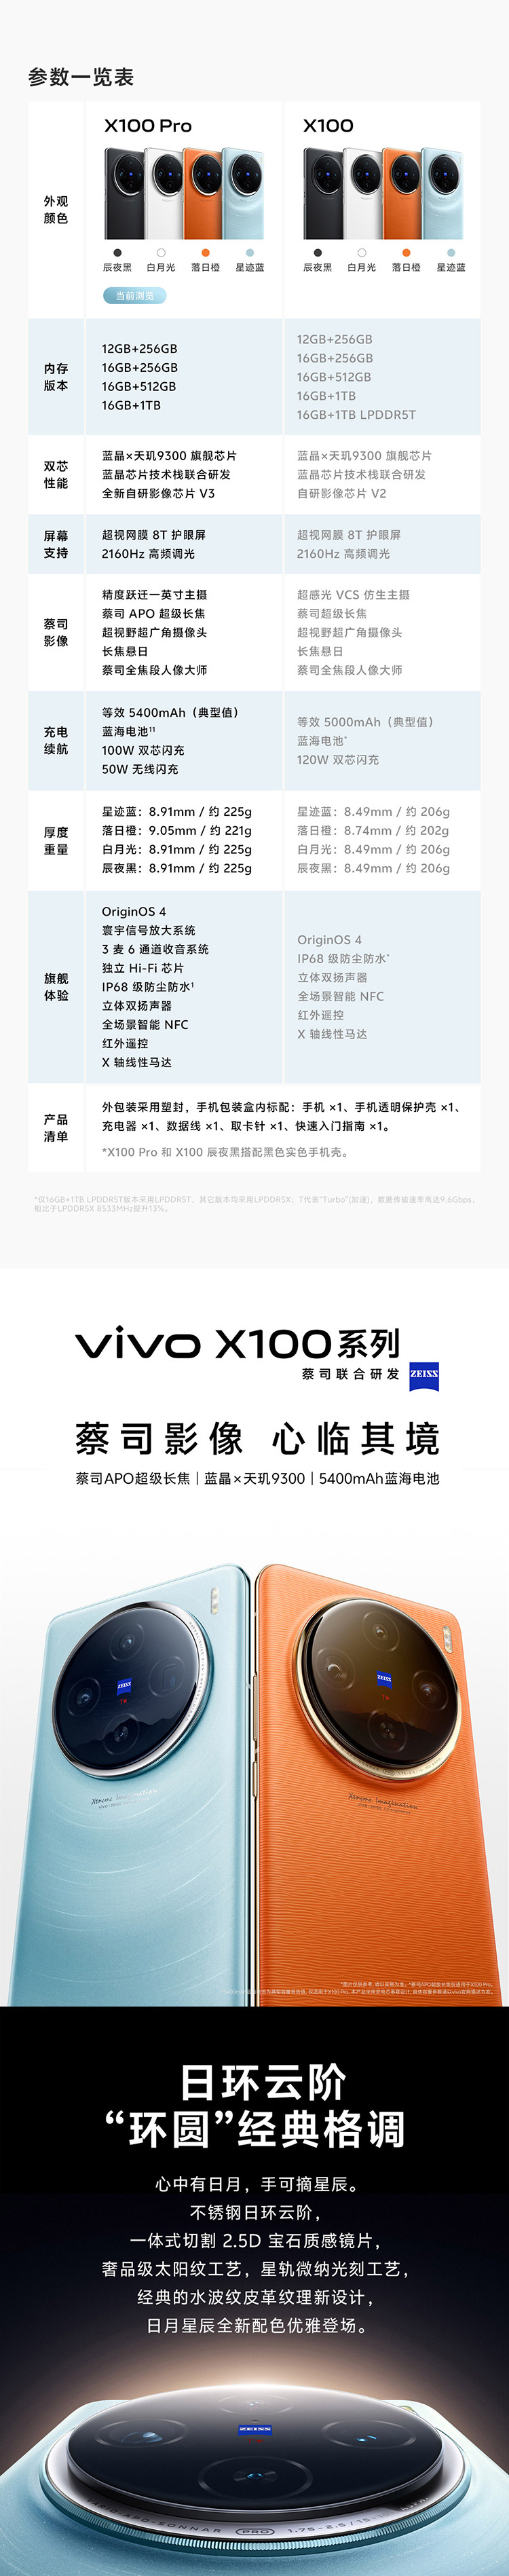 vivo-X100-Pro-750_01